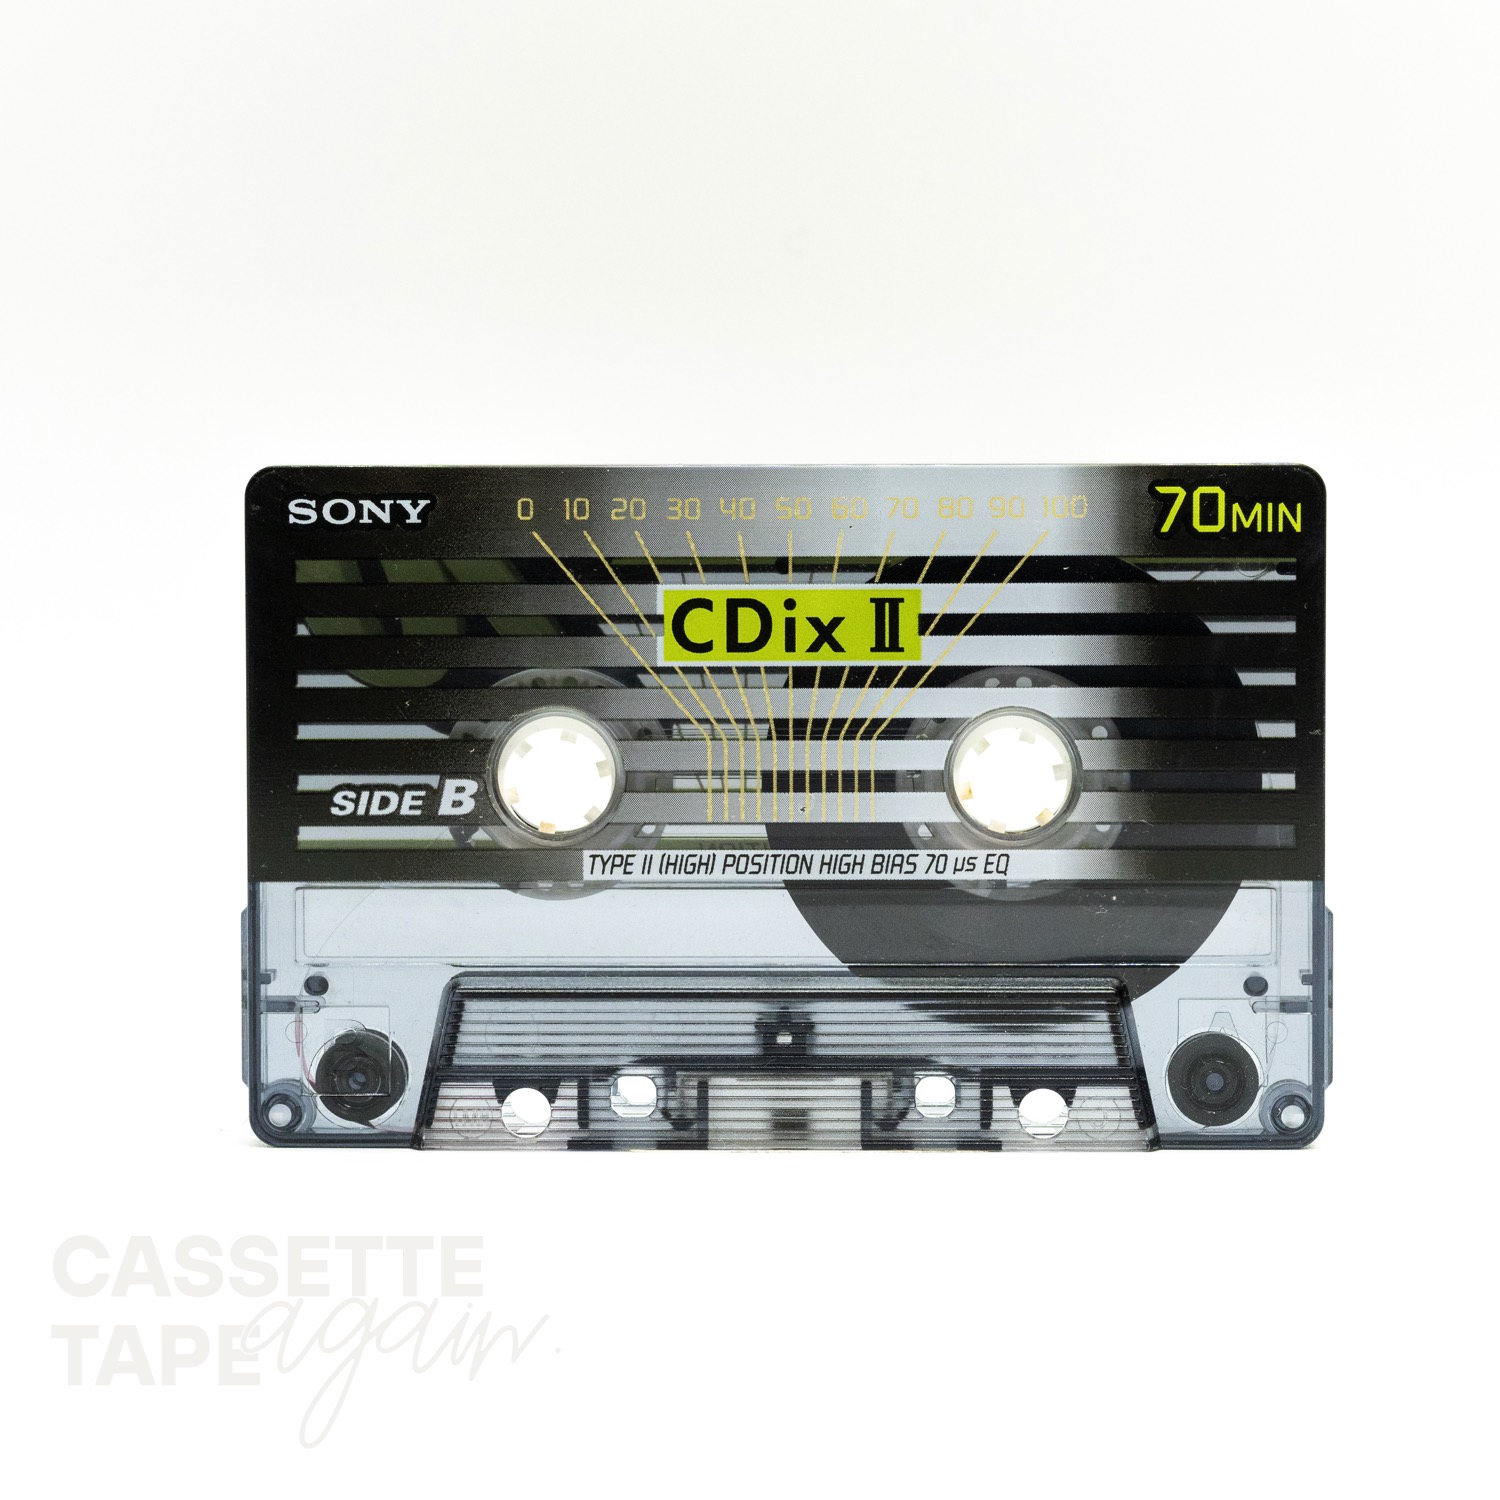 1470円 【限定特価】 ハイポジ カセットテープ サンキュー 39本 セット 使用済 SONY maxell TDK DENON AXIA